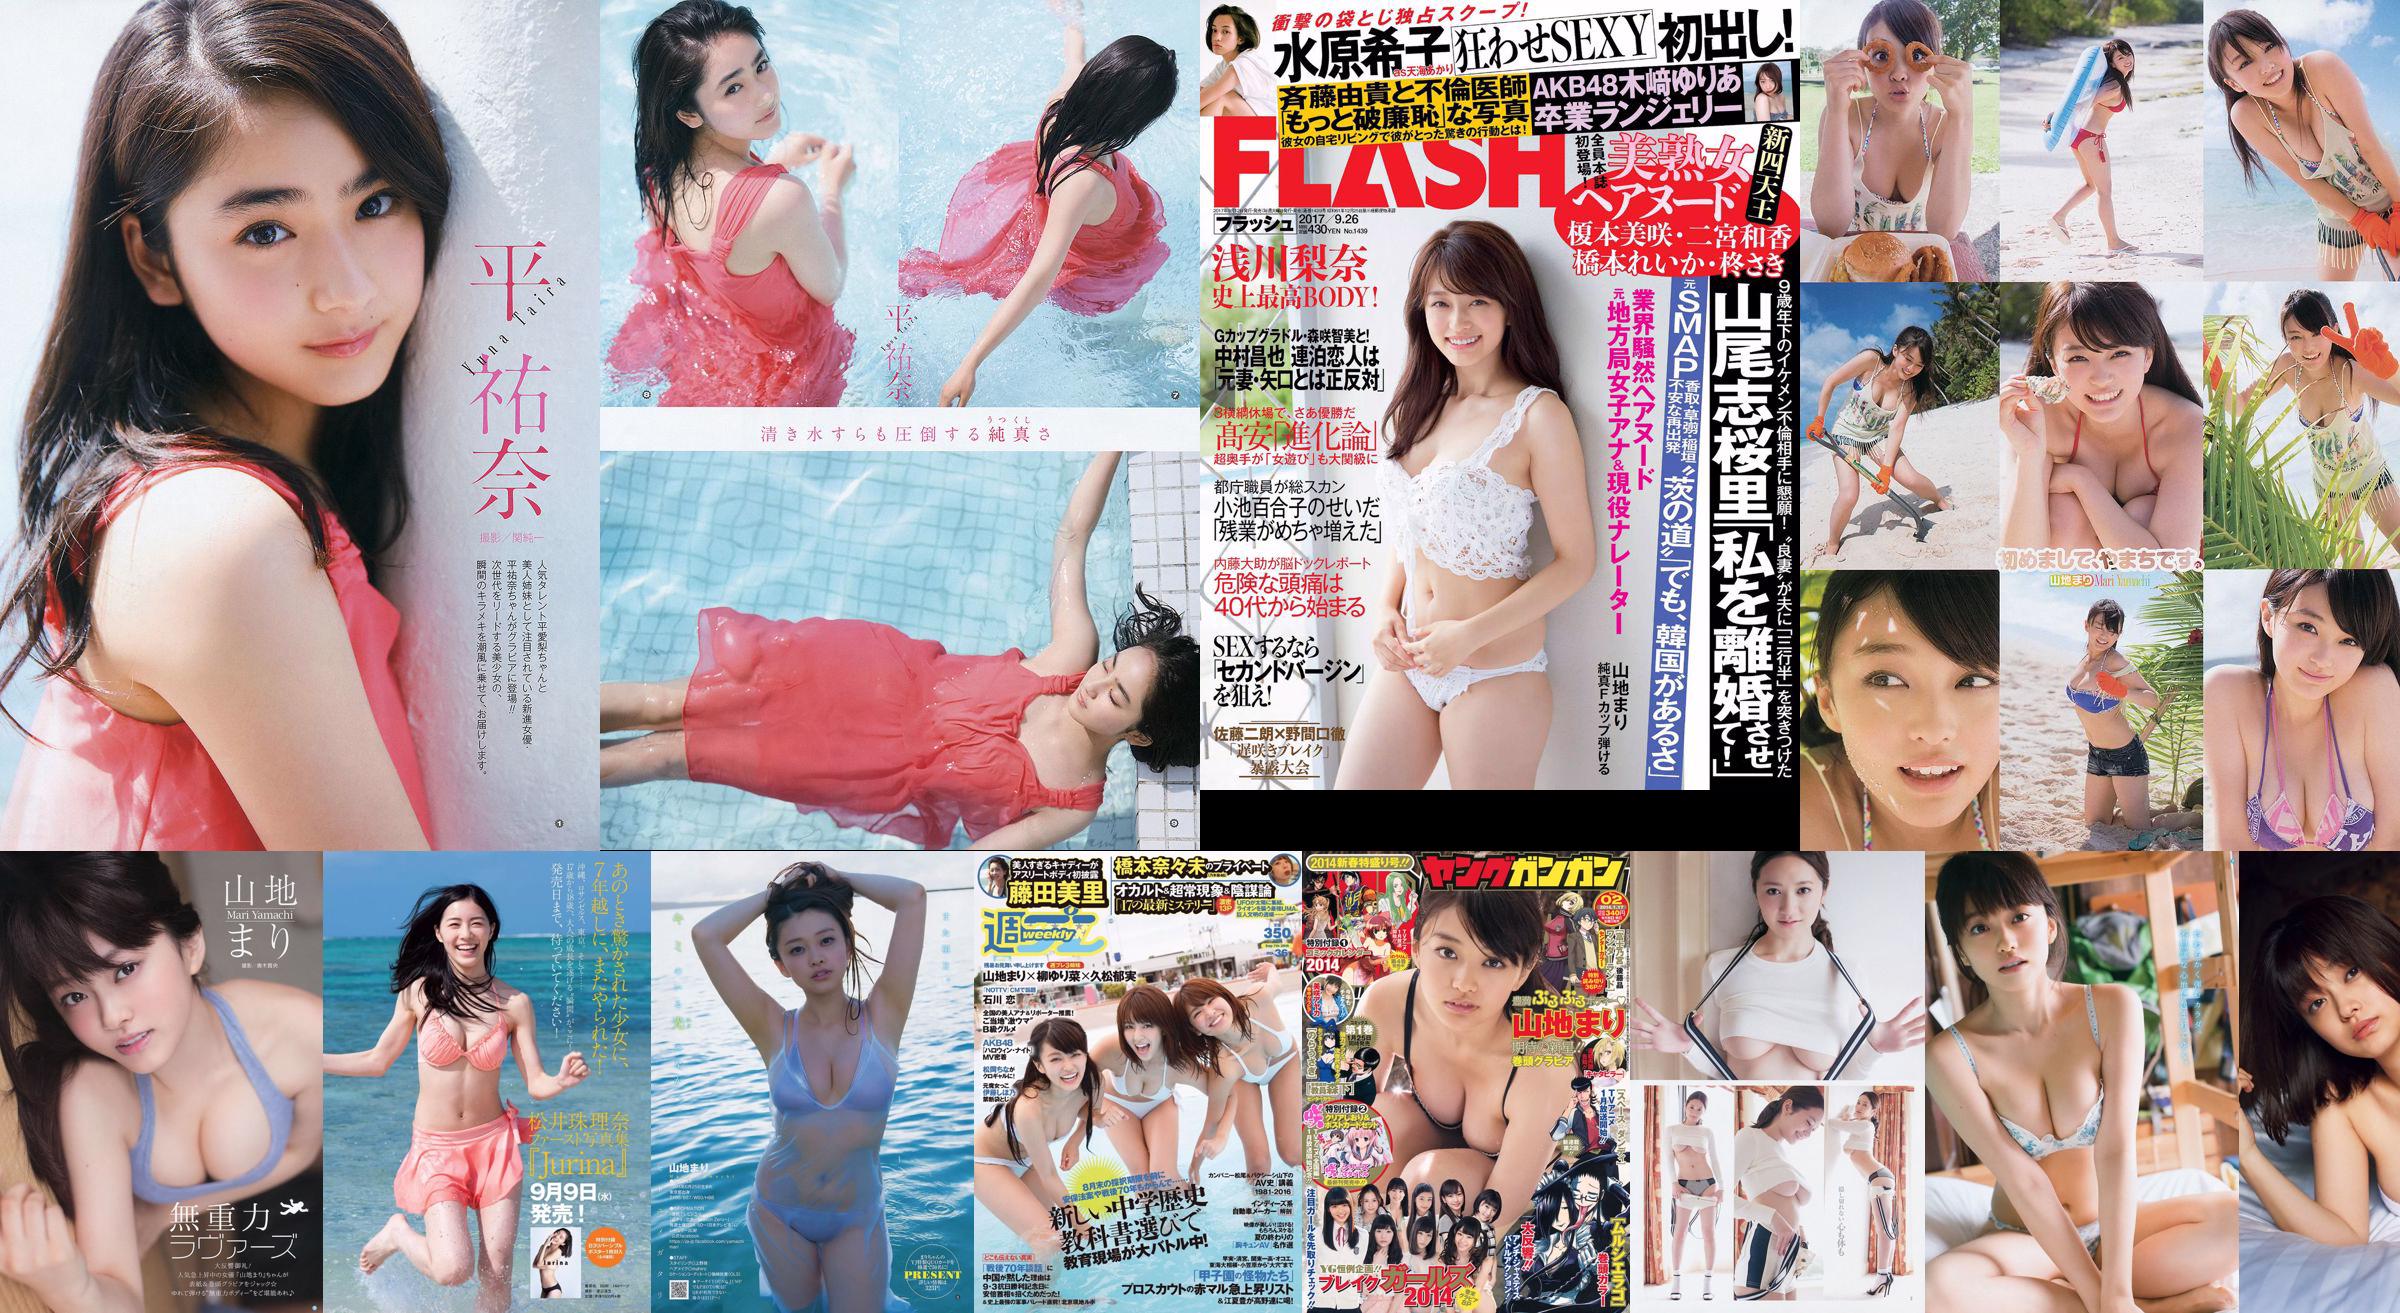 Montagna Mari Matsumoto Erika Tang Tian Erika Shionji Misumi Takahashi Noce Watanabe Miyuki [Weekly Playboy] 2016 No.30 Photo Magazine No.7debca Pagina 1